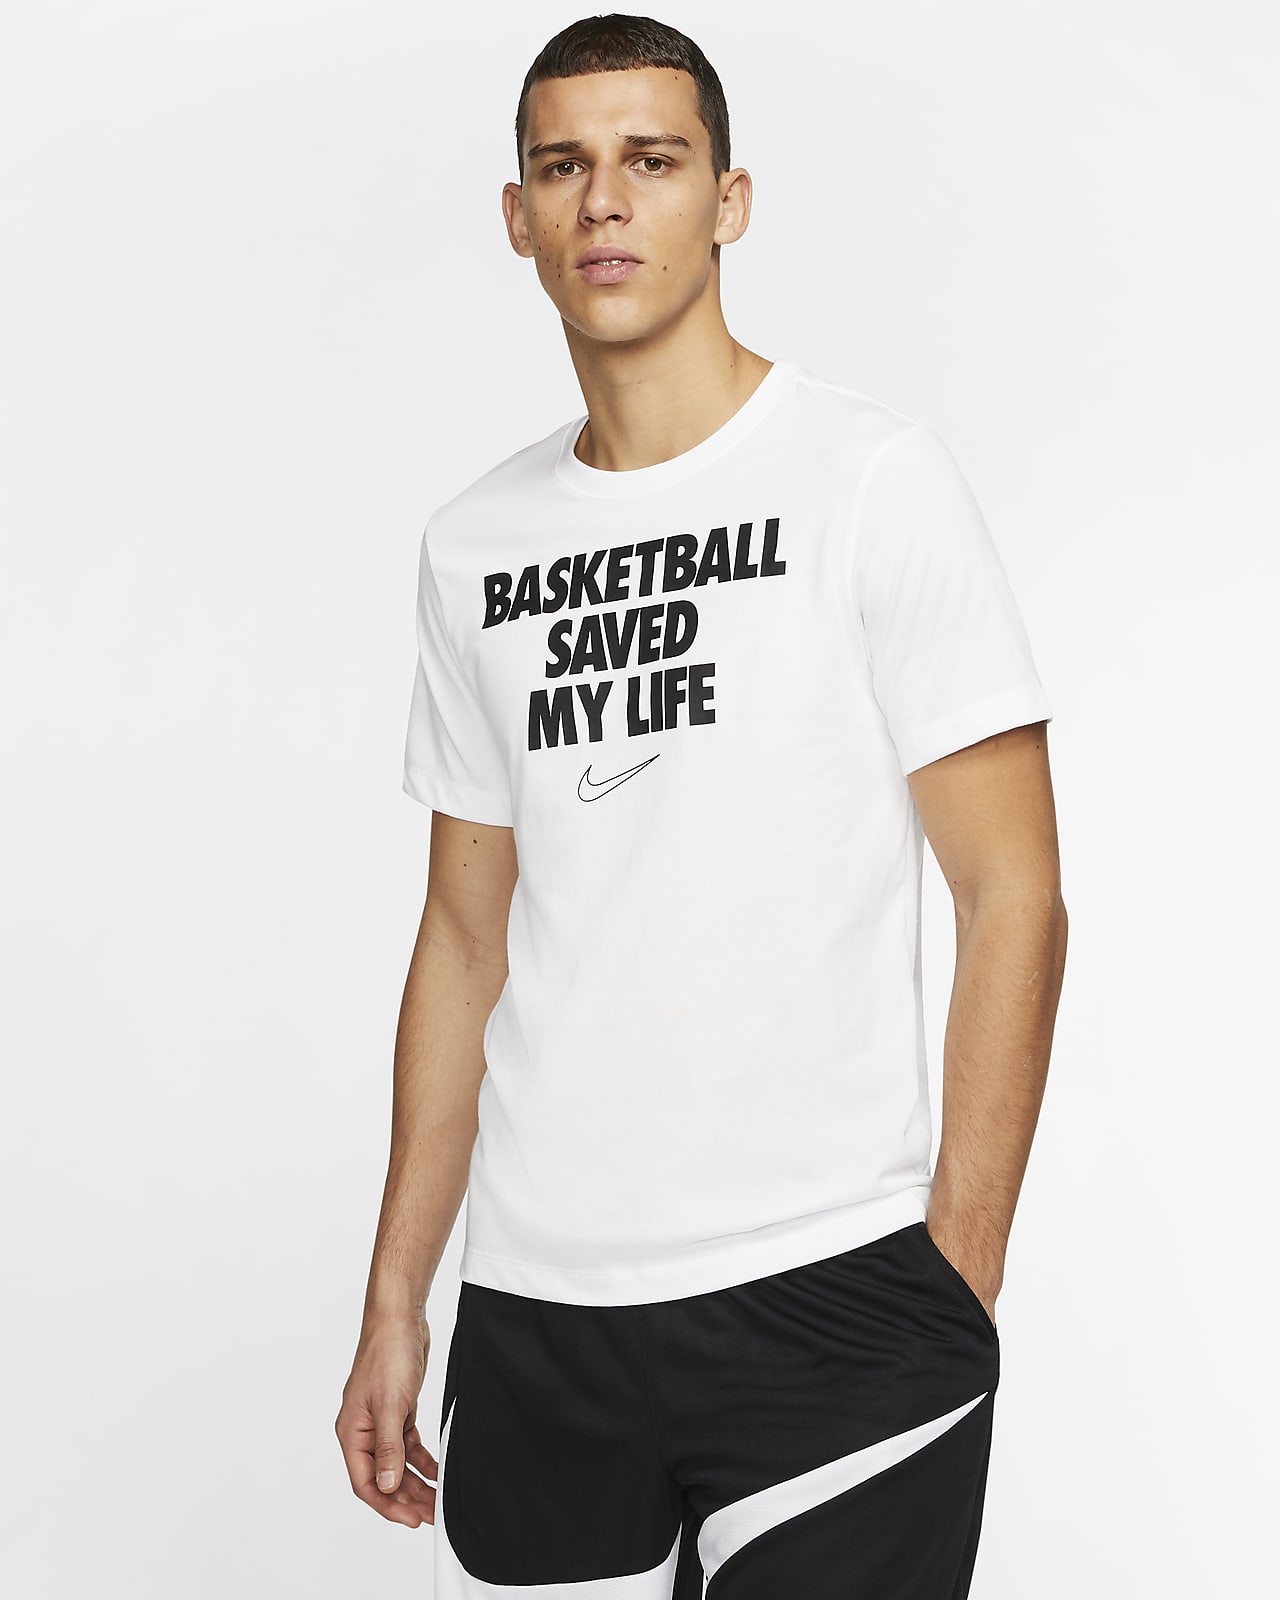 basketball saved my life shirt